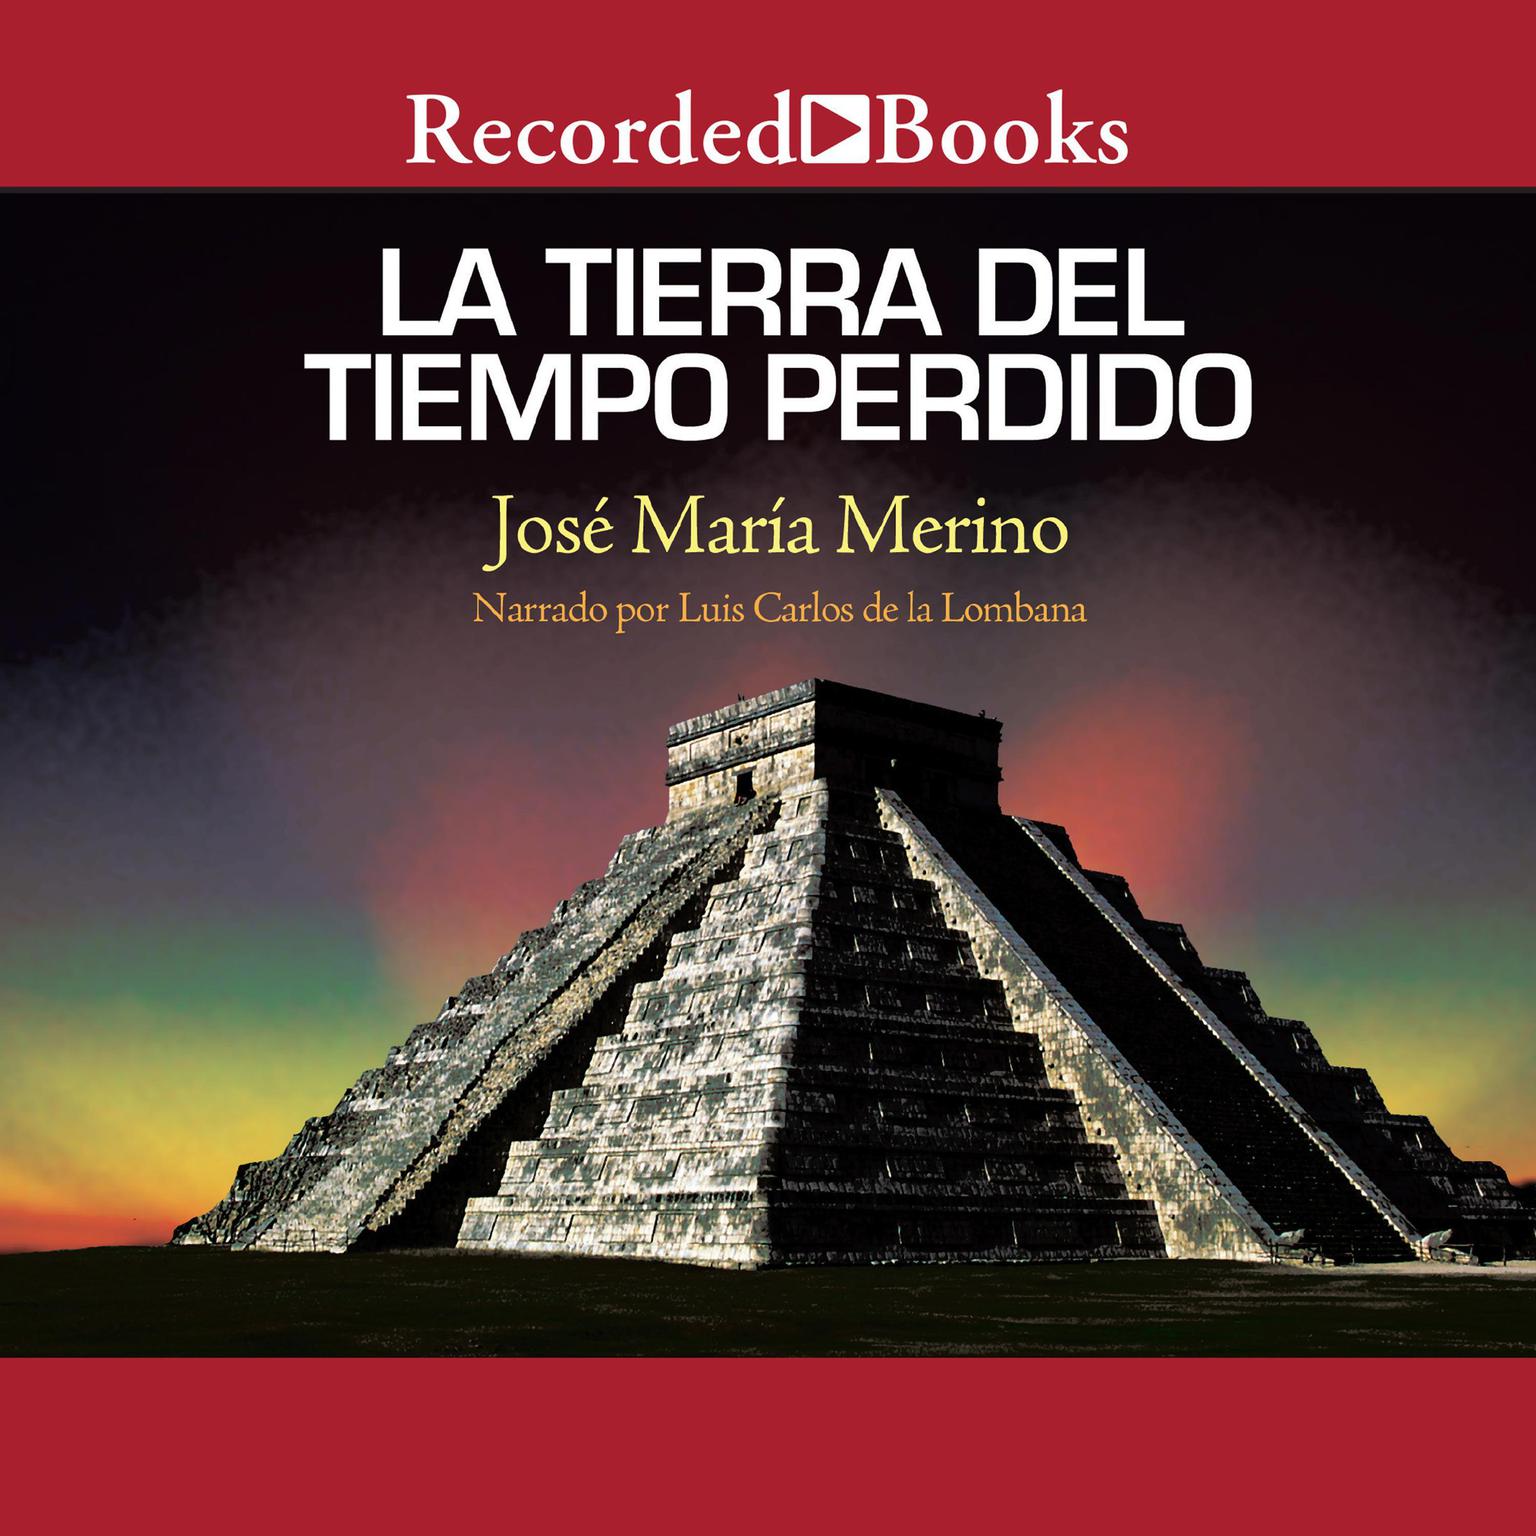 La tierra del tiempo perdido (The Land of Lost Time) Audiobook, by José María Merino